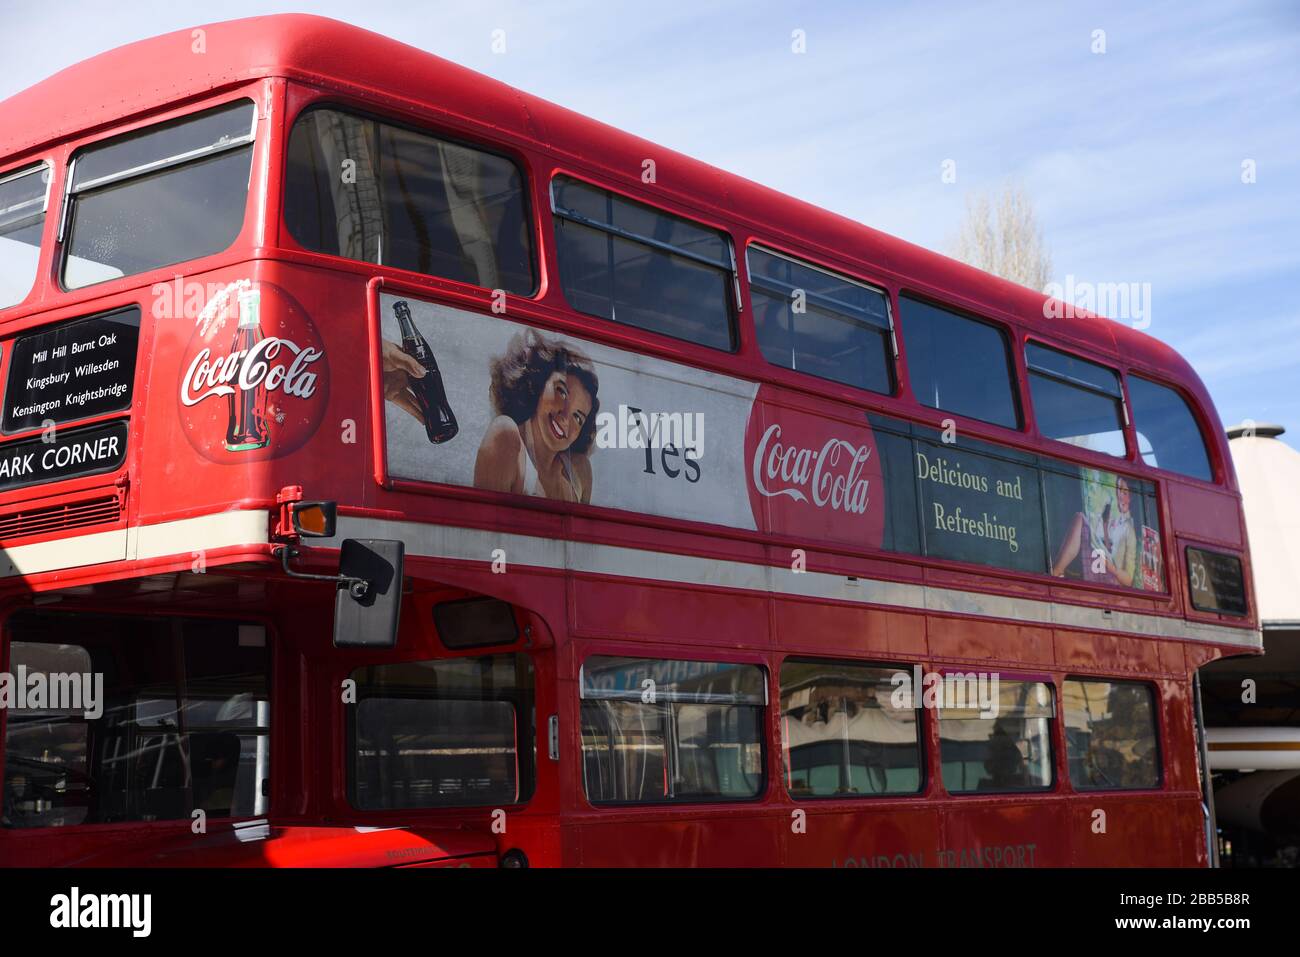 Londra, Regno Unito - 22 febbraio 2015 : un nostalgico poster pubblicitario di Coca-Cola su un tradizionale autobus a due piani Red London. Foto Stock